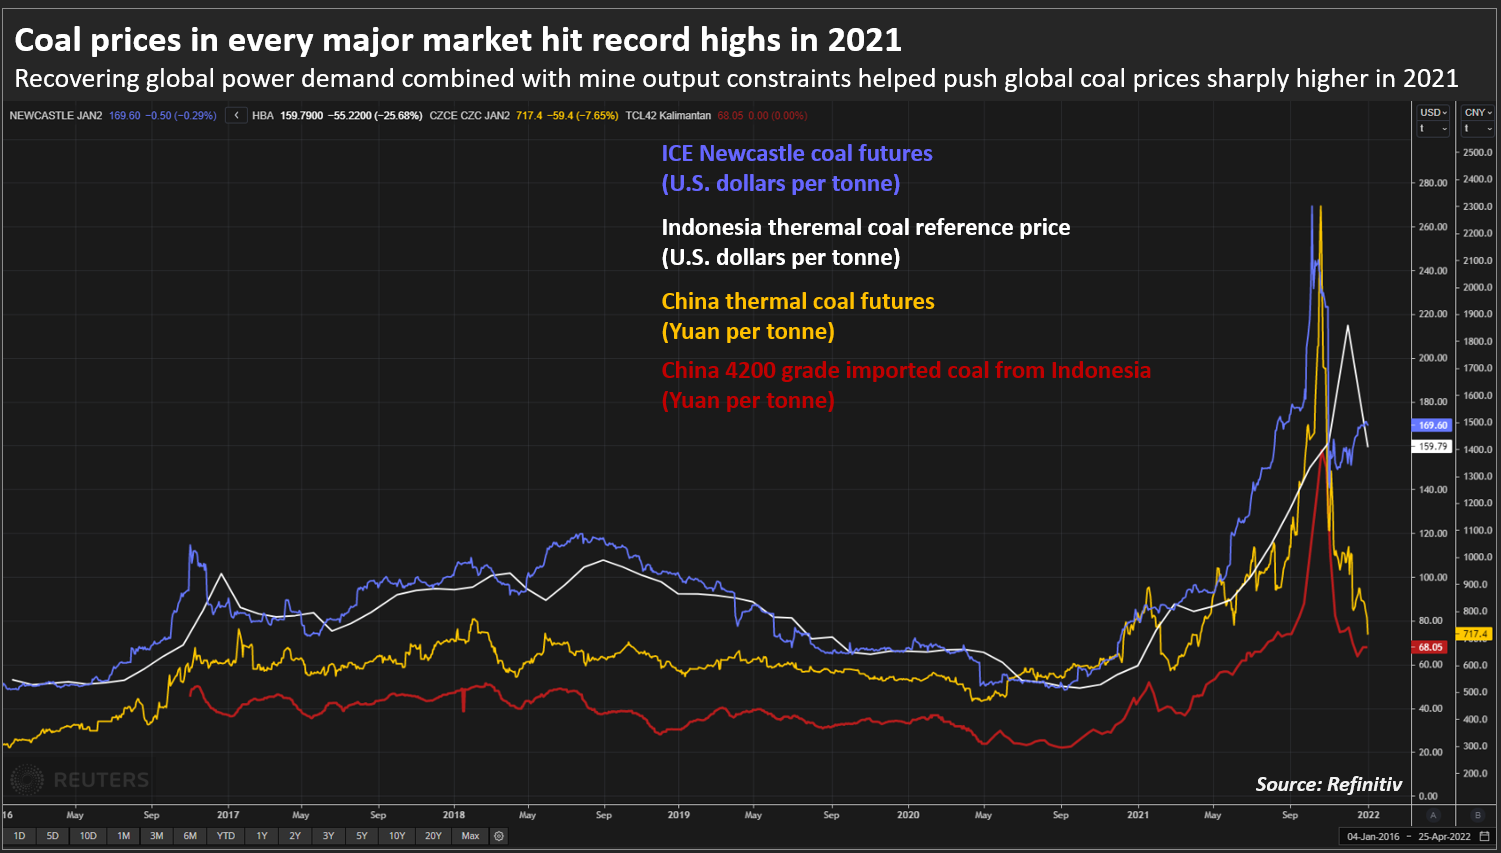 Pada tahun 2021, harga batubara di setiap pasar utama akan berada pada titik tertinggi sepanjang masa